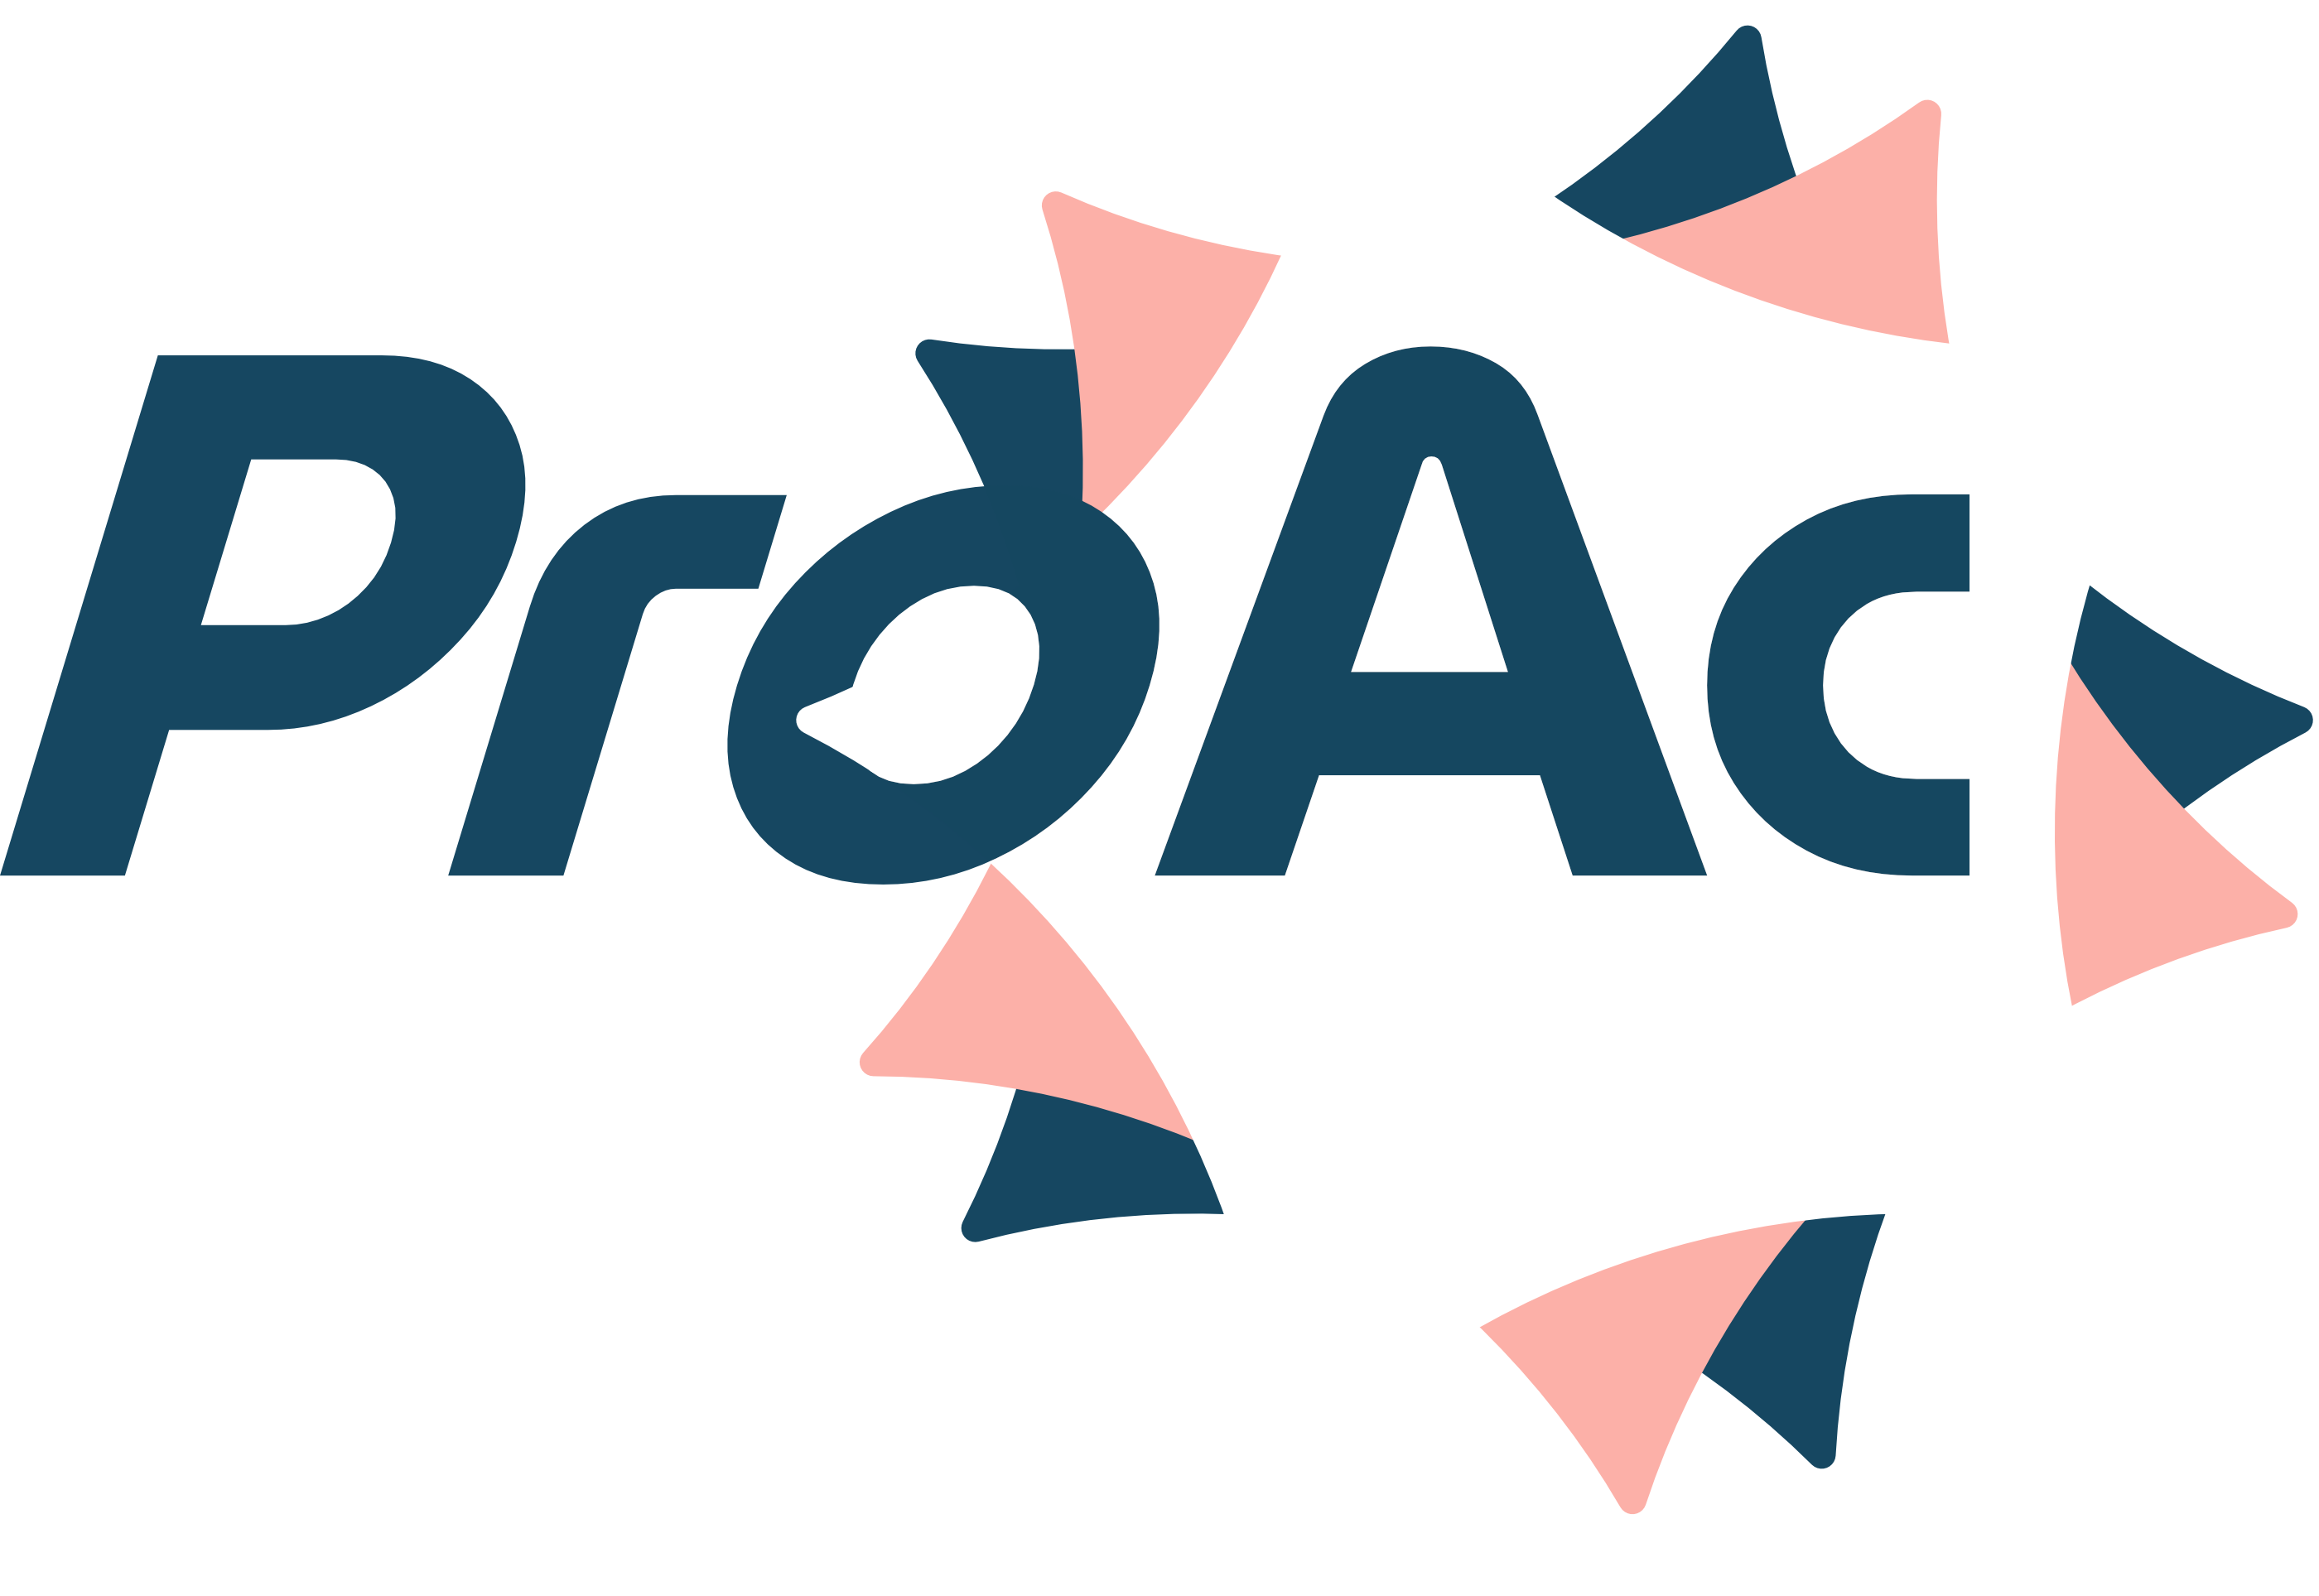 ProAc community effort icon